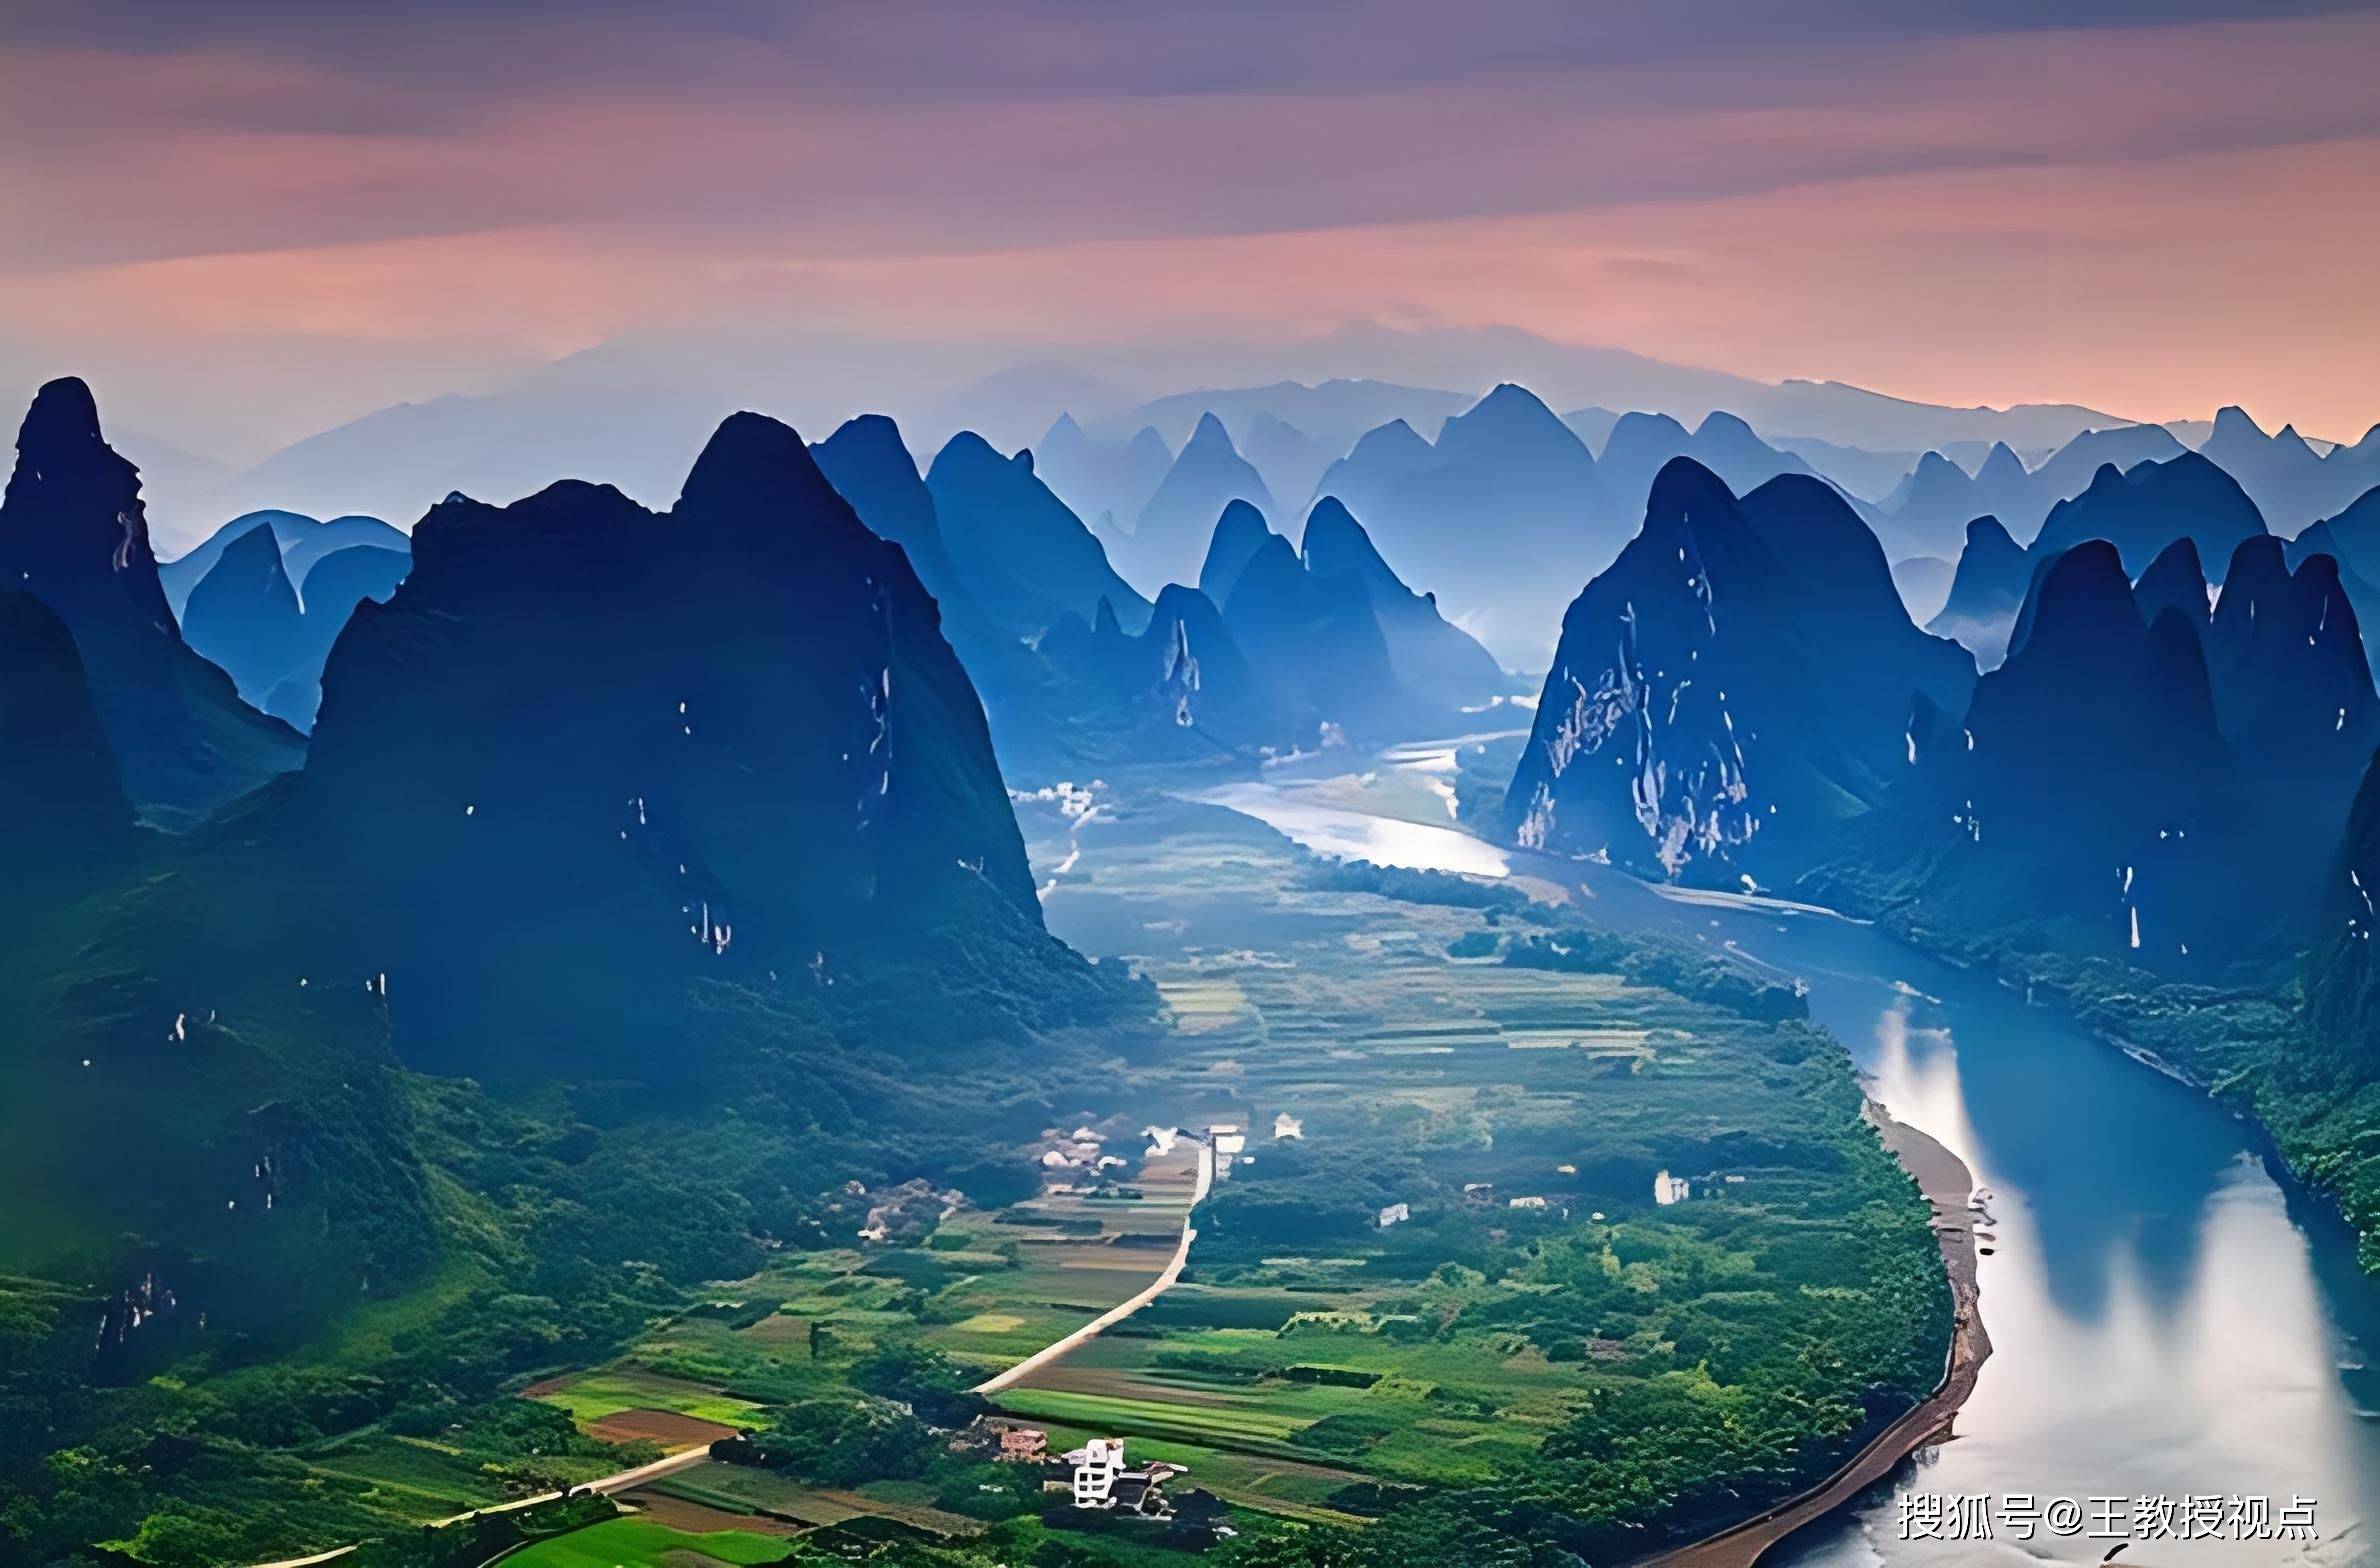 桂林山水:自然之美,人文之韵与科学的探索